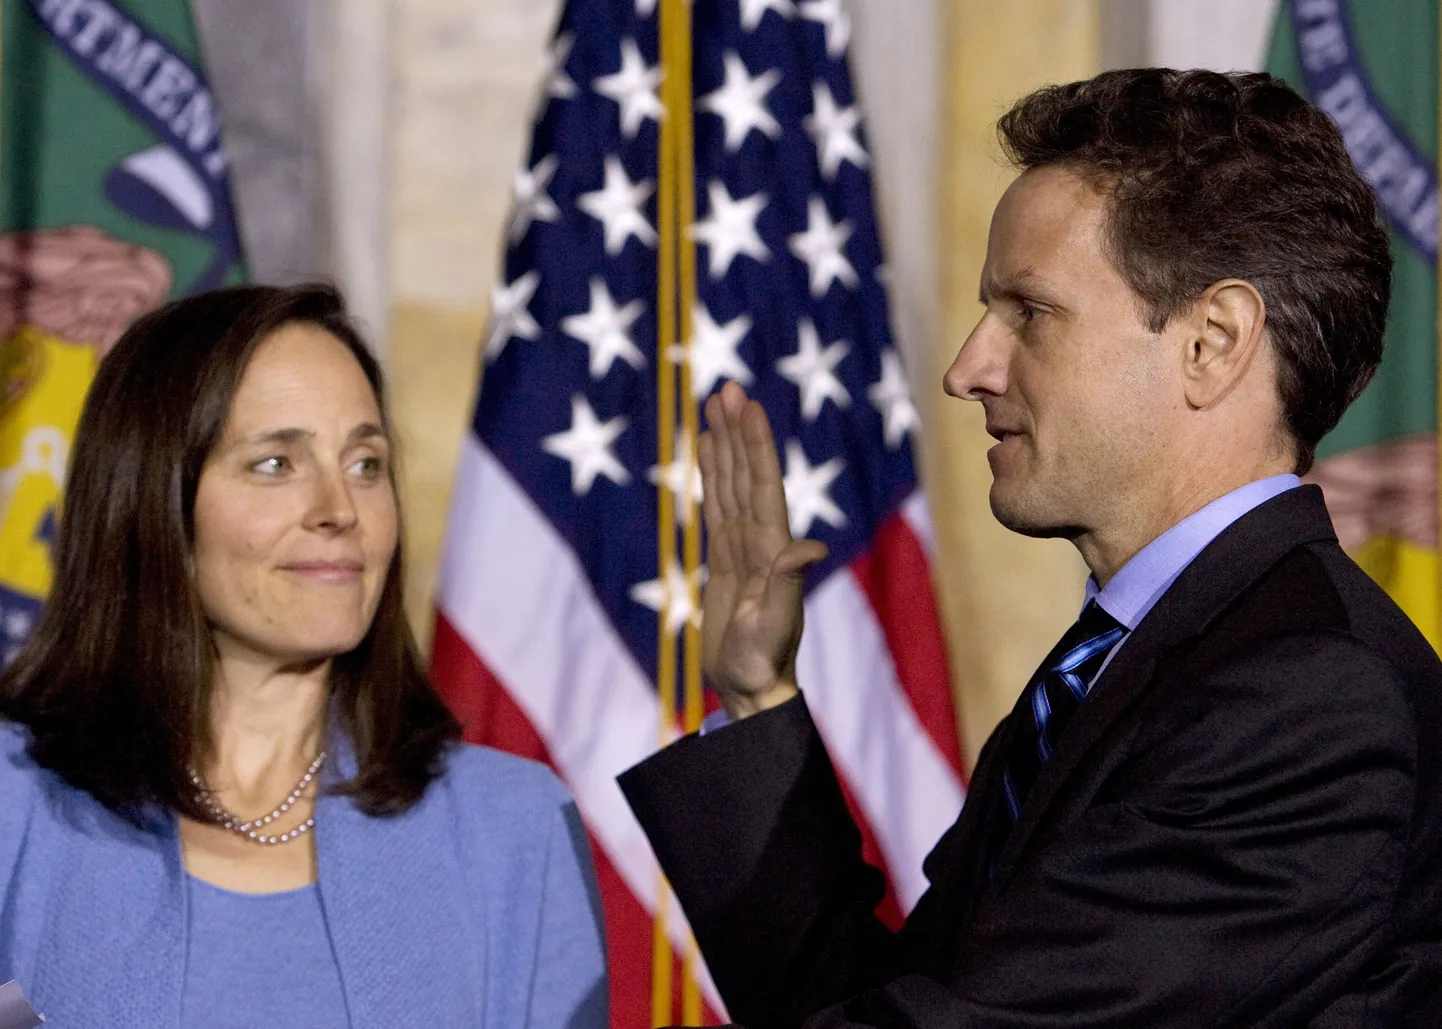 Timothy Geithner annab abikaasa Carole'i juuresolekul ametivannet.